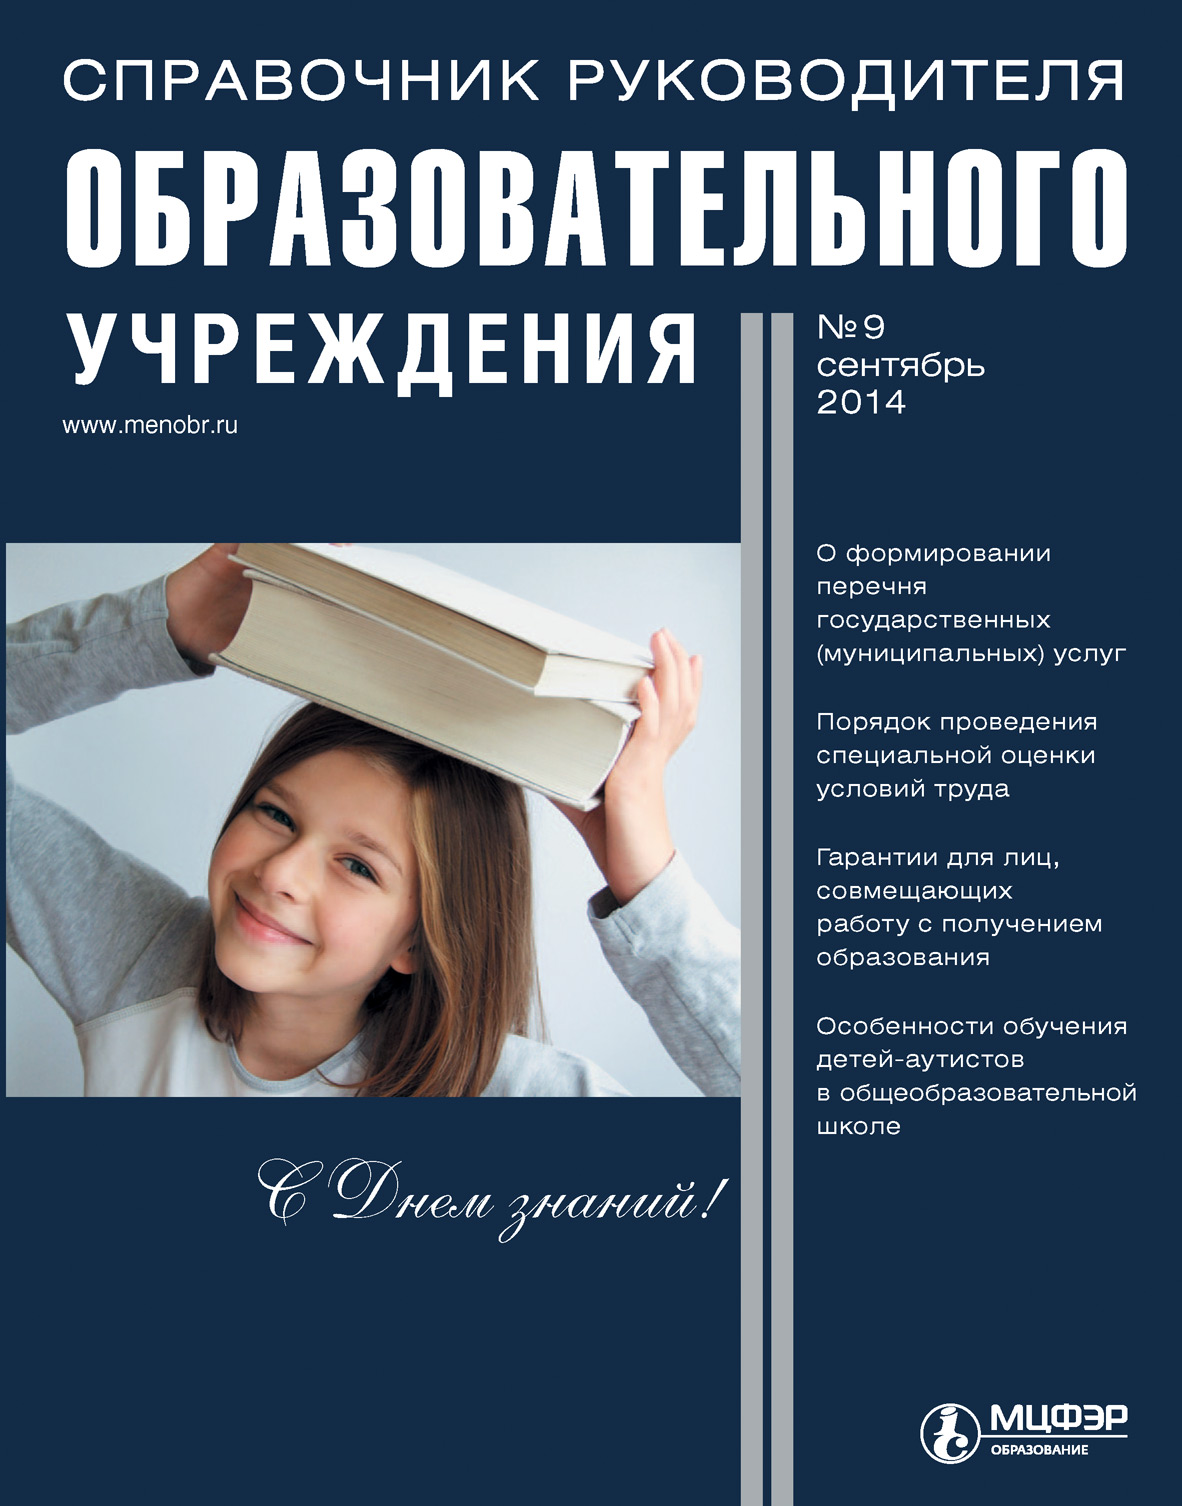 Справочник руководителя образовательного учреждения № 9 2014